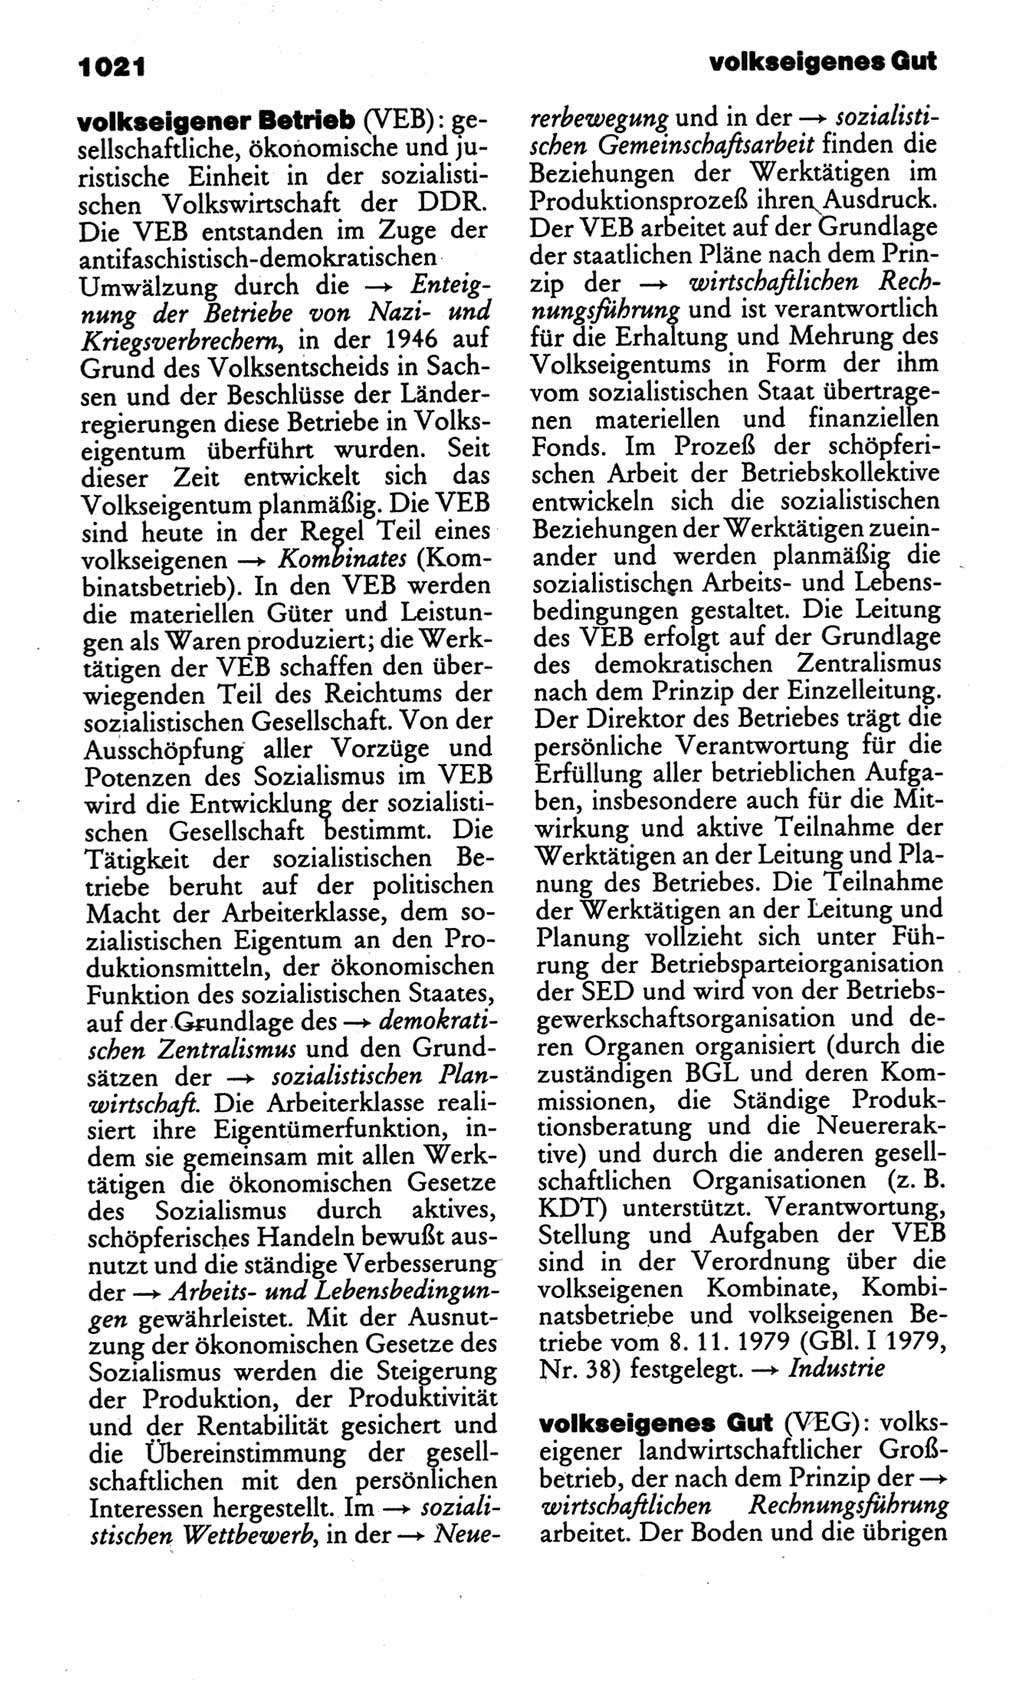 Kleines politisches Wörterbuch [Deutsche Demokratische Republik (DDR)] 1986, Seite 1021 (Kl. pol. Wb. DDR 1986, S. 1021)